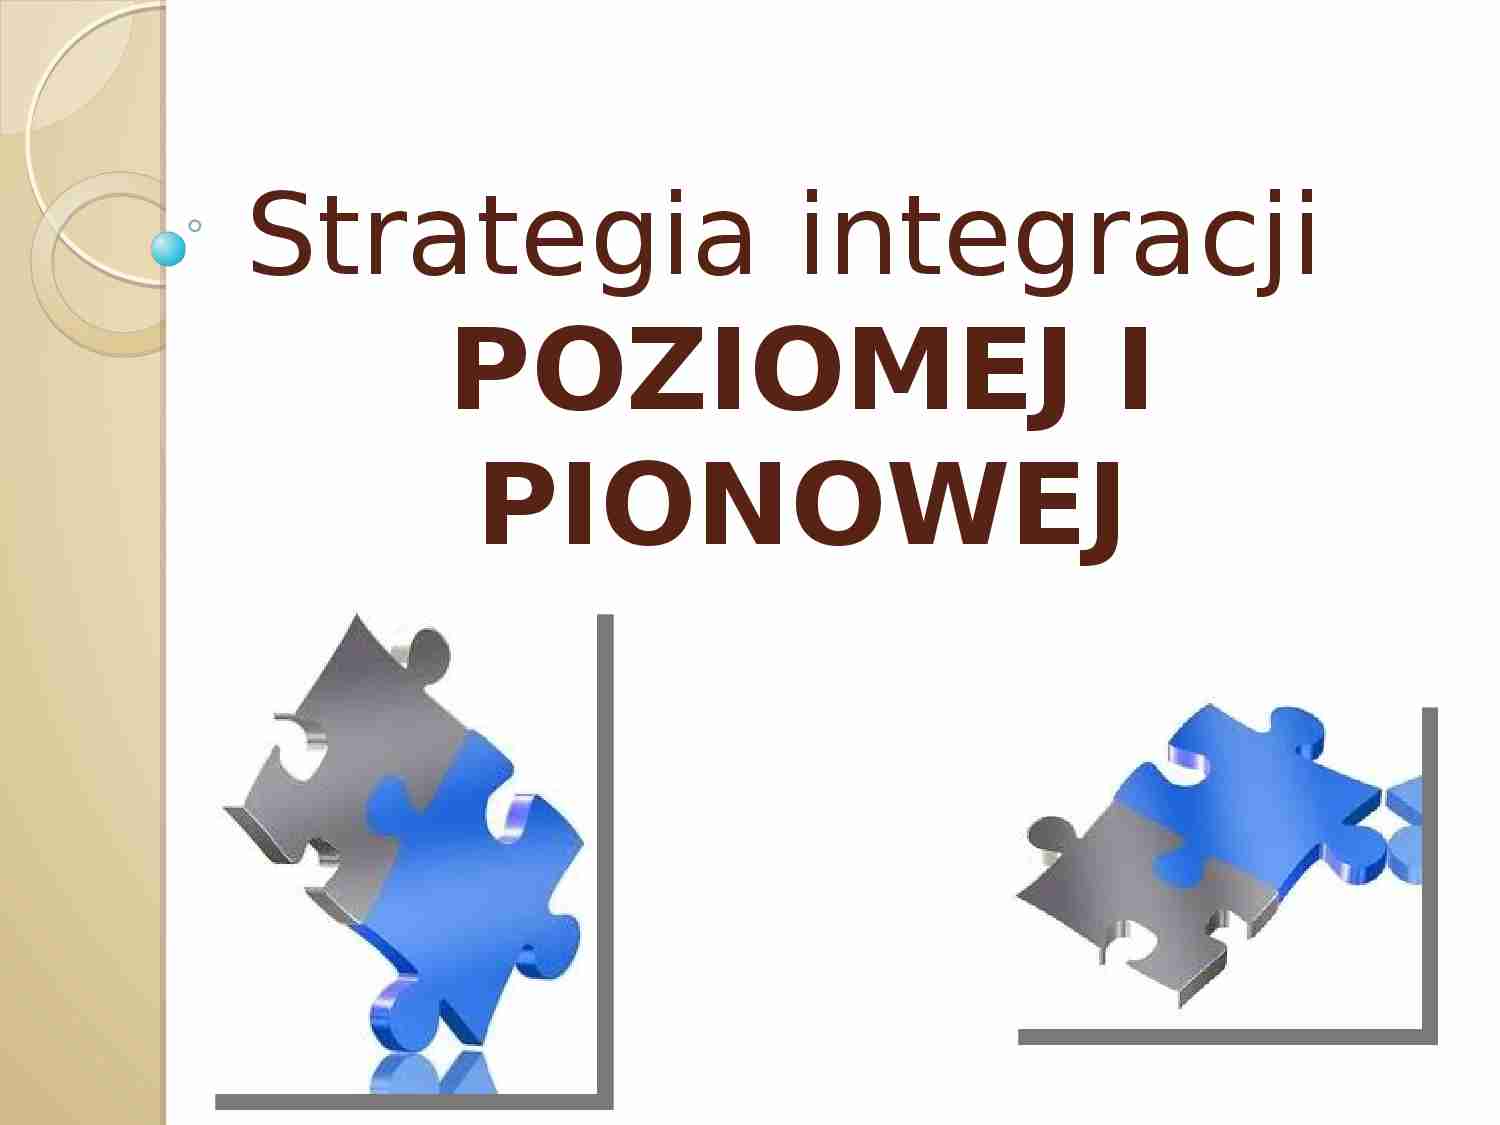 Strategia integracji poziomej i pionowej - strona 1